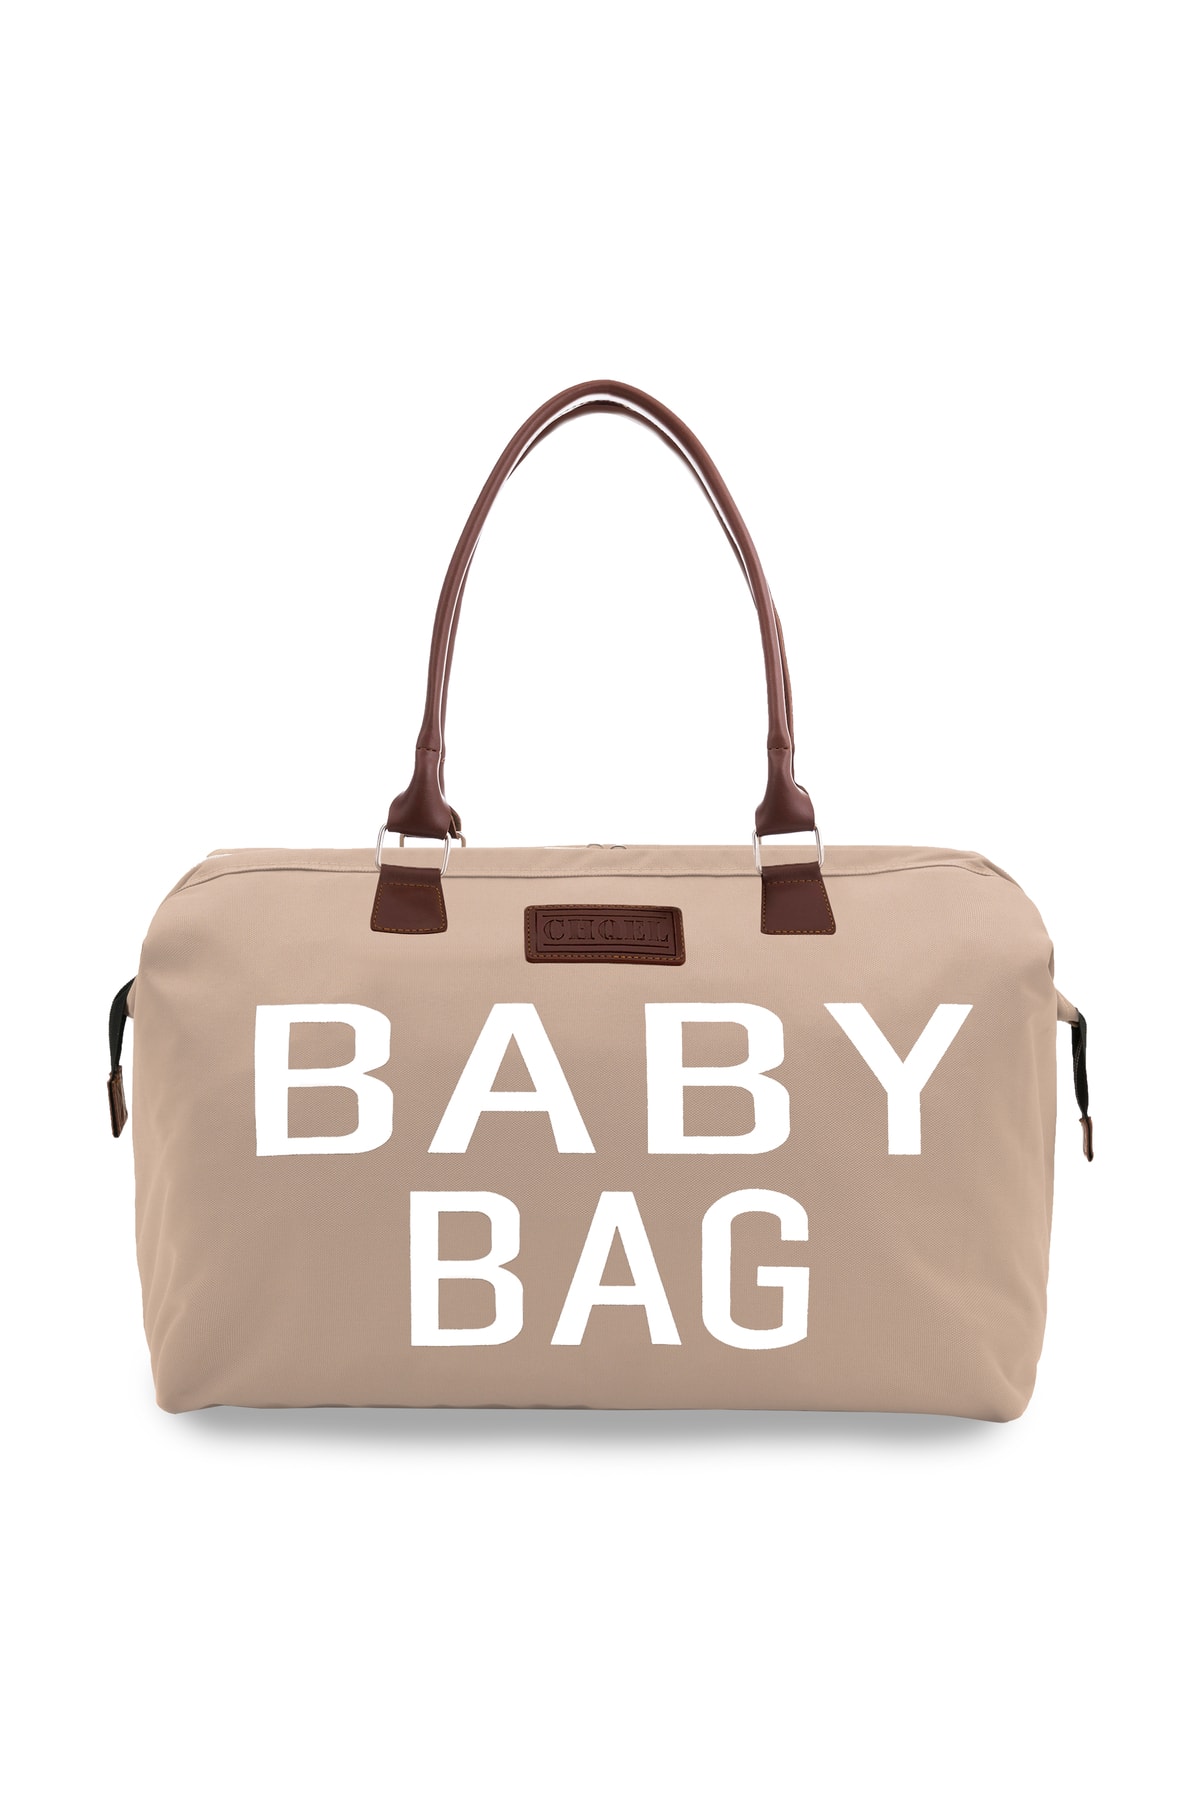 CHQEL Baby Bag Anne Bebek Bakım Çantası, Doğum, Hastane Ve Seyahat Çantası